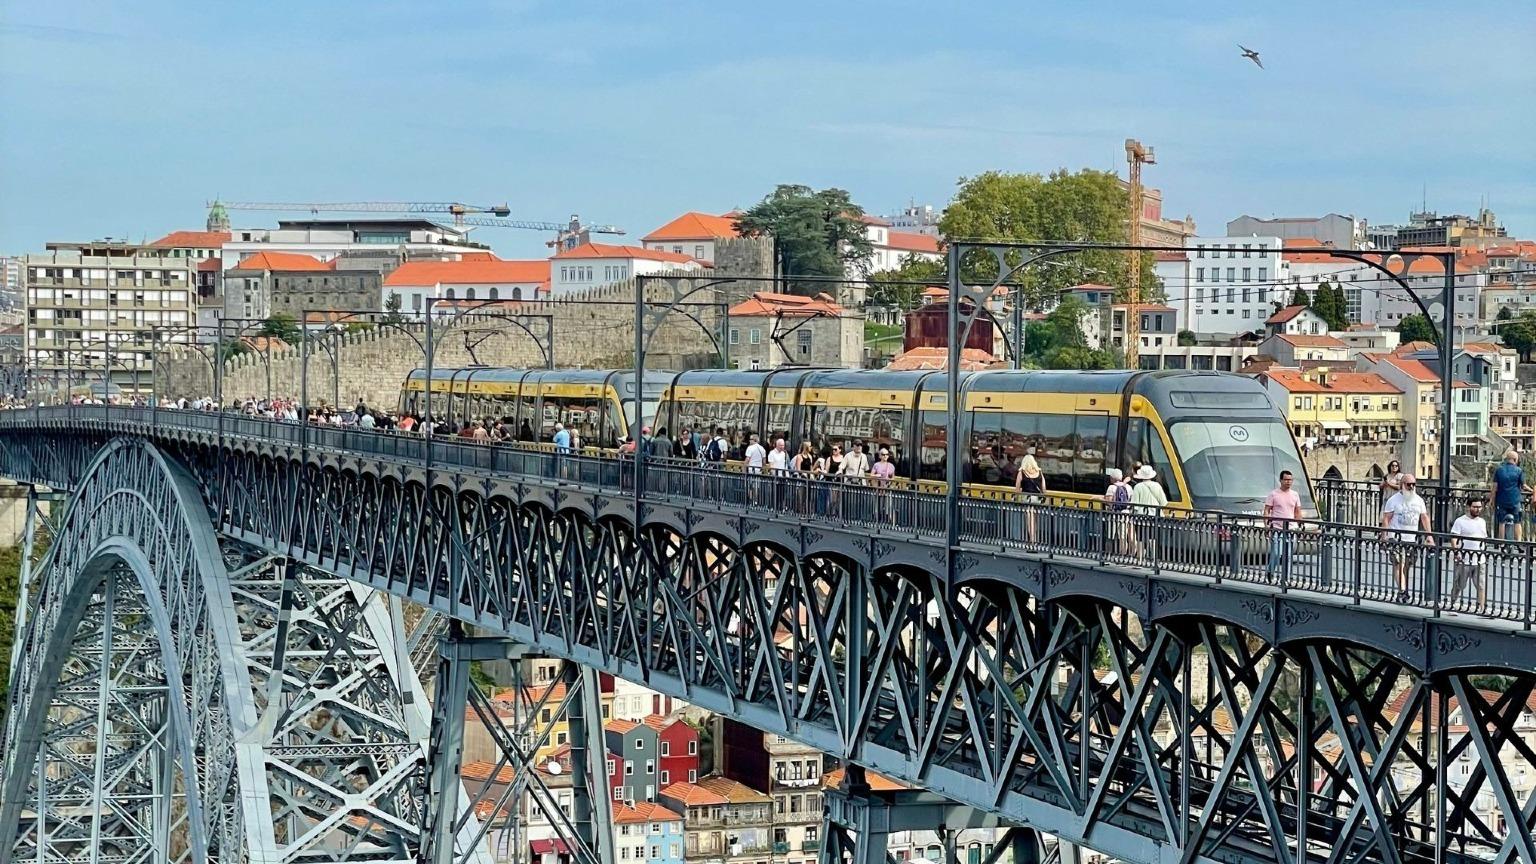 El Metro de Oporto viaja sobre el emblemático Puente Luis I, que conecta Gaia y Oporto.